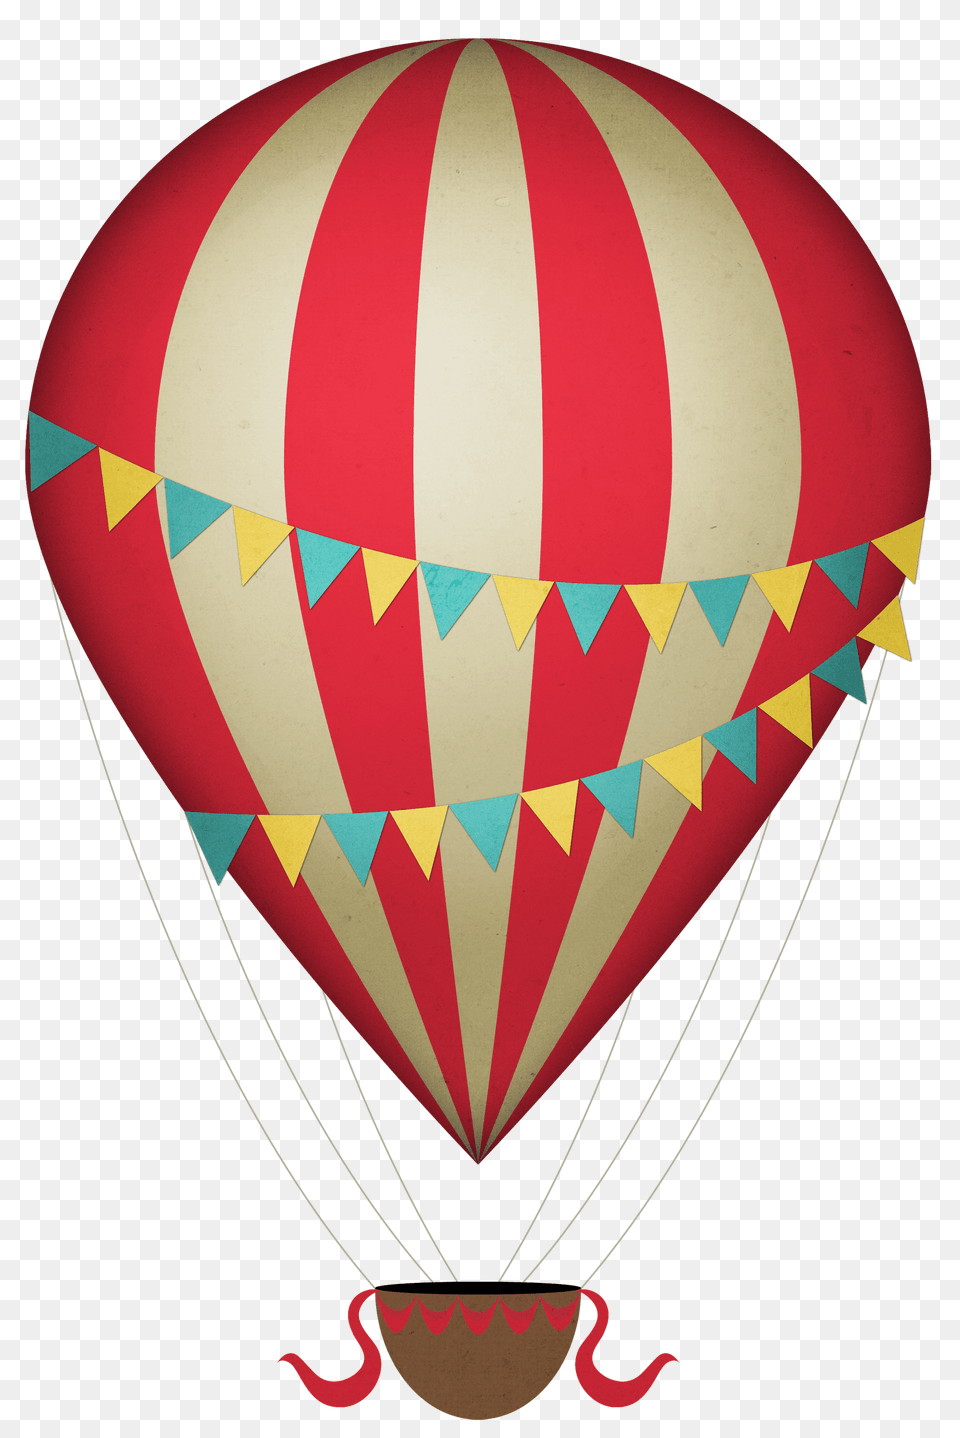 Hot Border Cliparts, Aircraft, Hot Air Balloon, Transportation, Vehicle Free Transparent Png